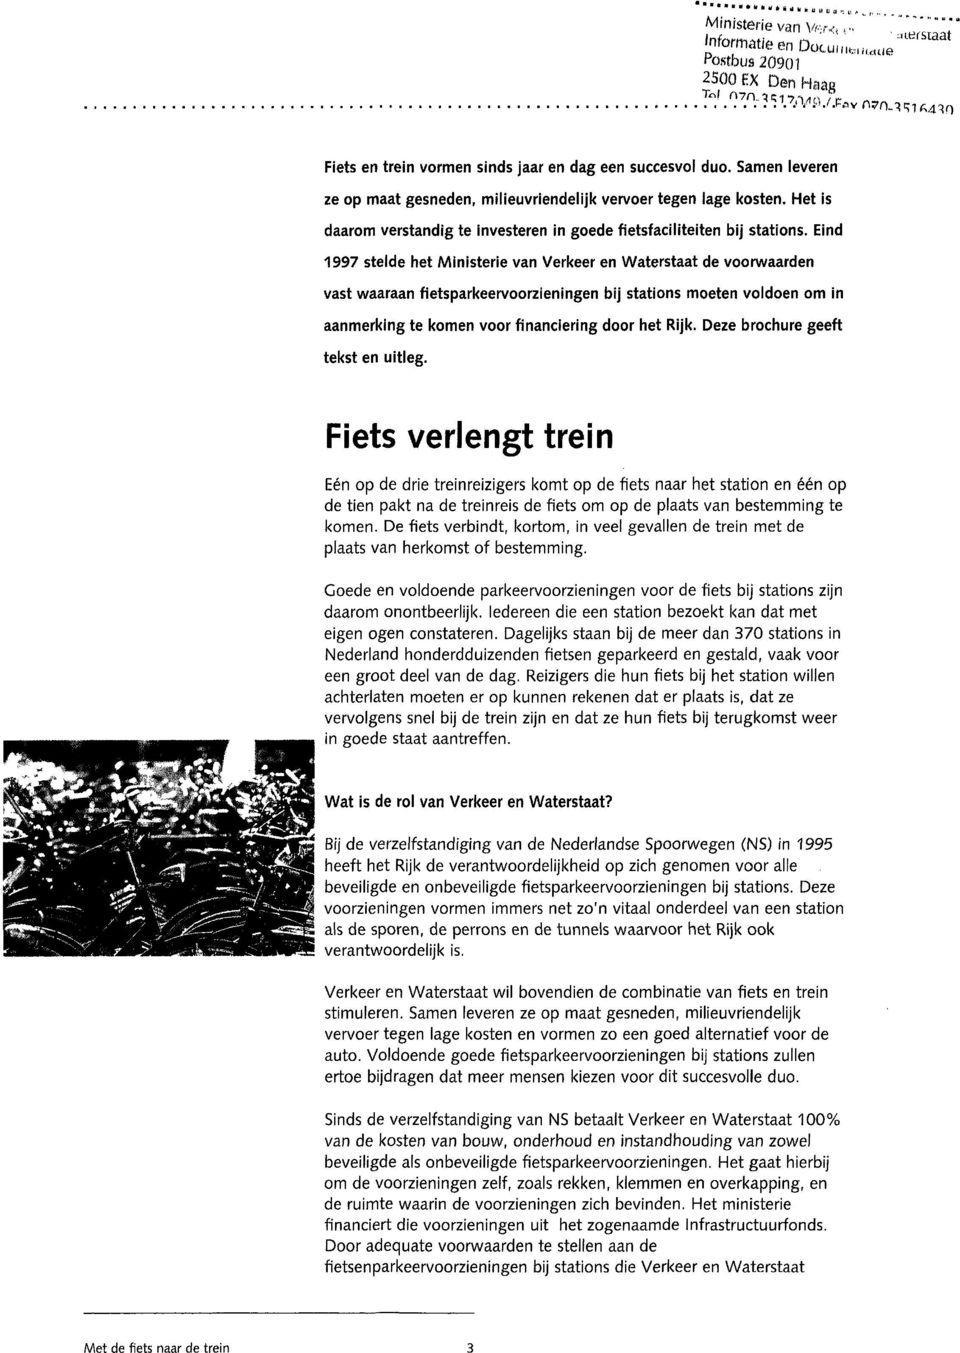 Eind 1997 stelde het Ministerie van Verkeer en Waterstaat de voorwaarden vast waaraan fietsparkeervoorzieningen bij stations moeten voldoen om in aanmerking te komen voor financiering door het Rijk.